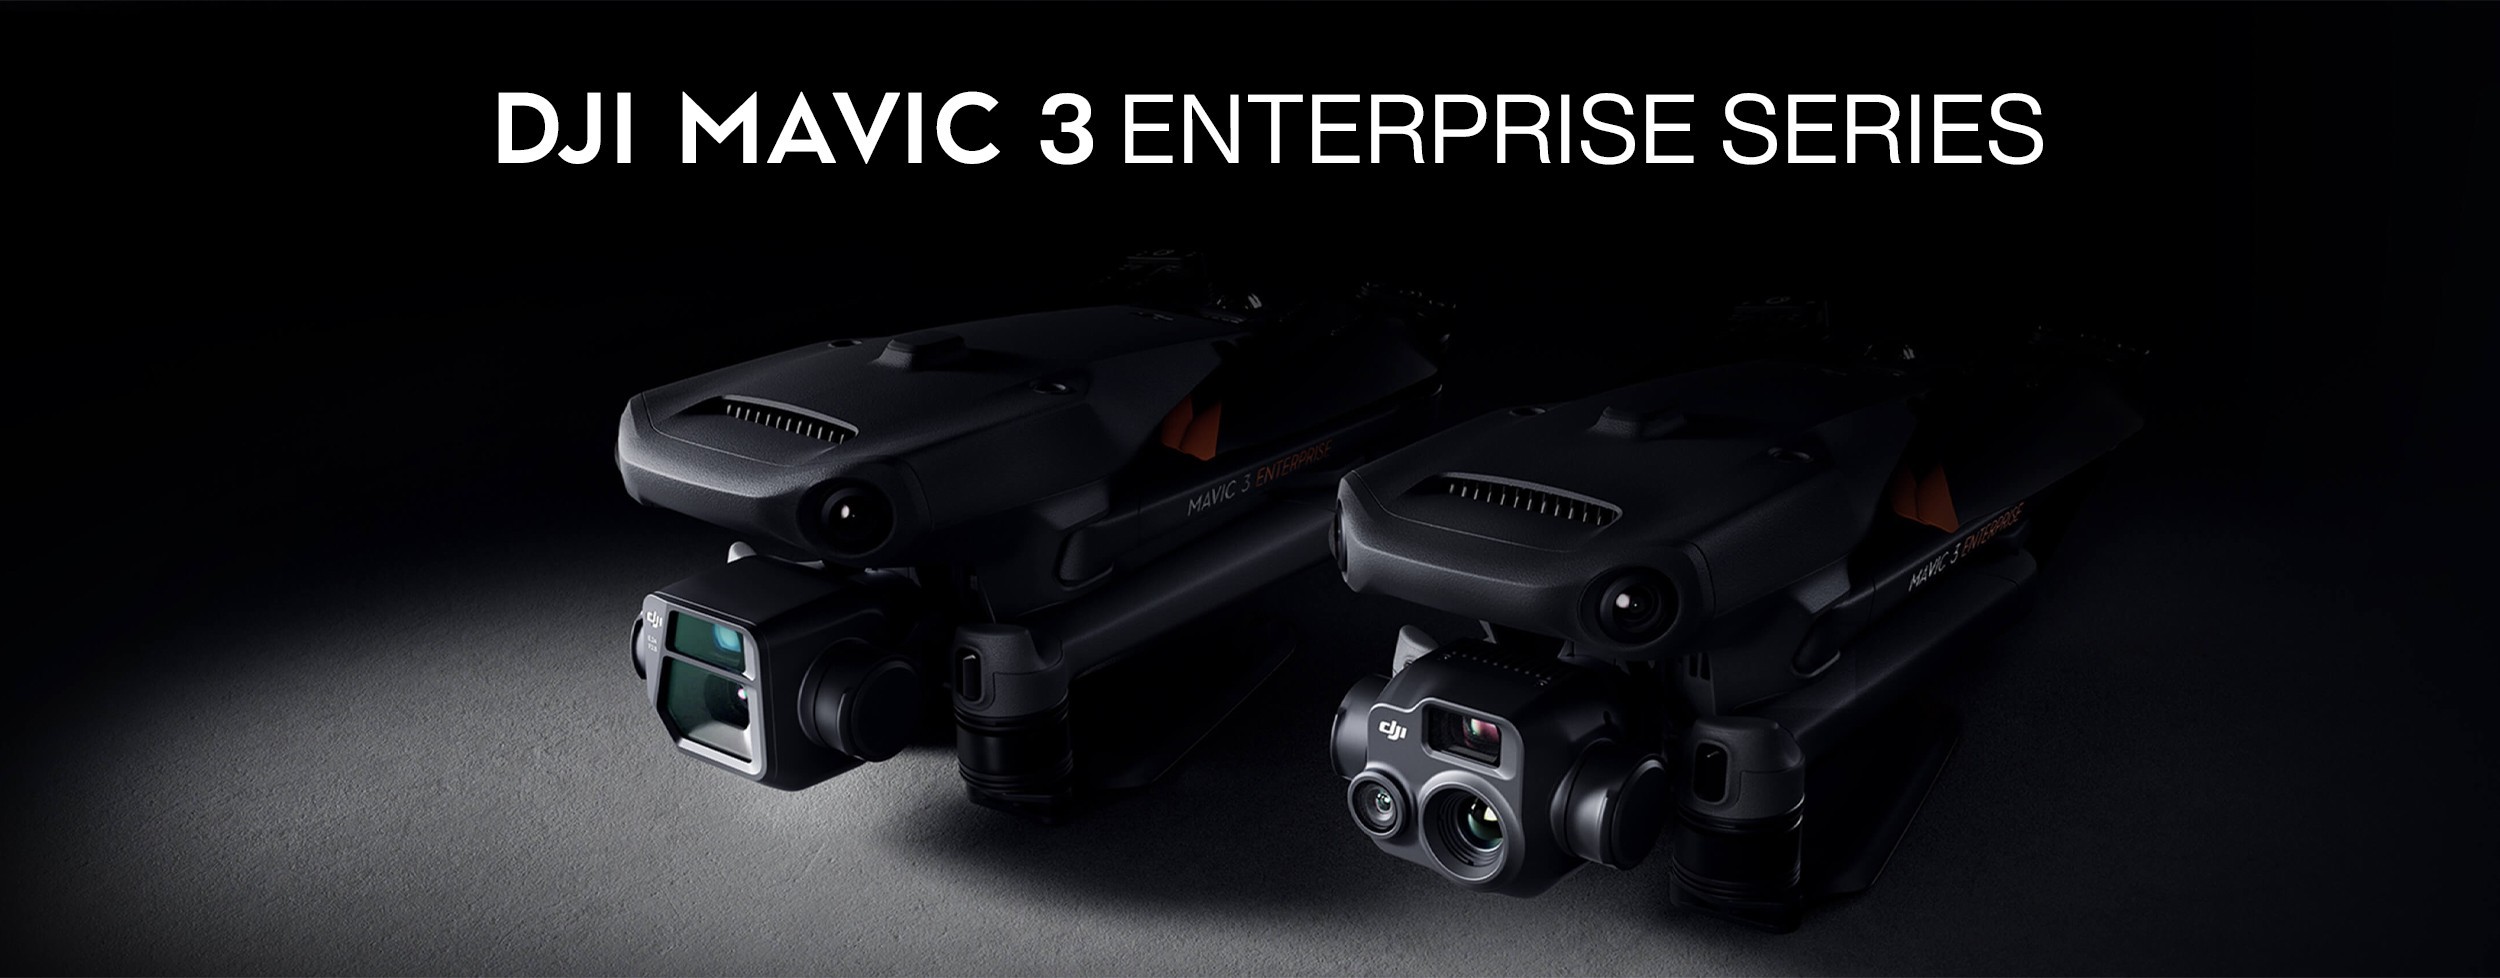 DJI MAVIC 3 Enterprise Series